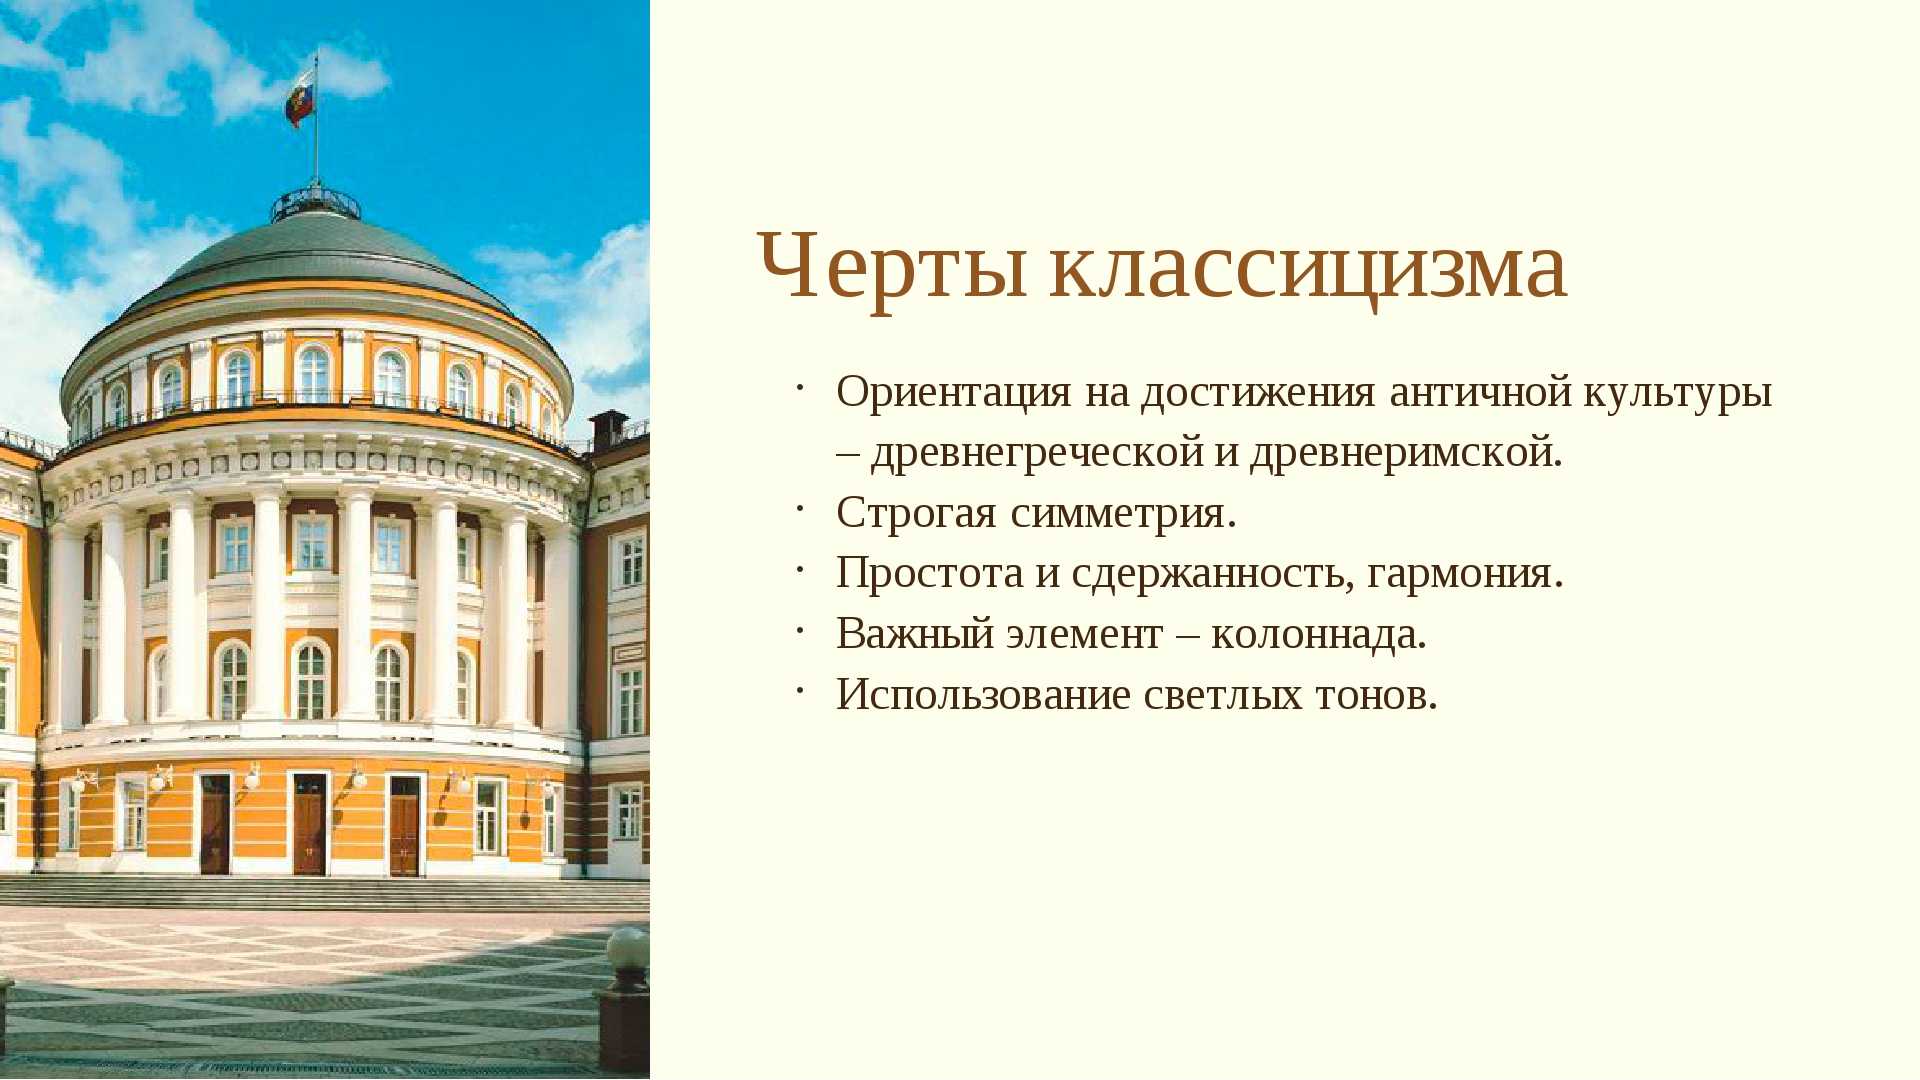 Черты классицизма в архитектуре 18 века в России